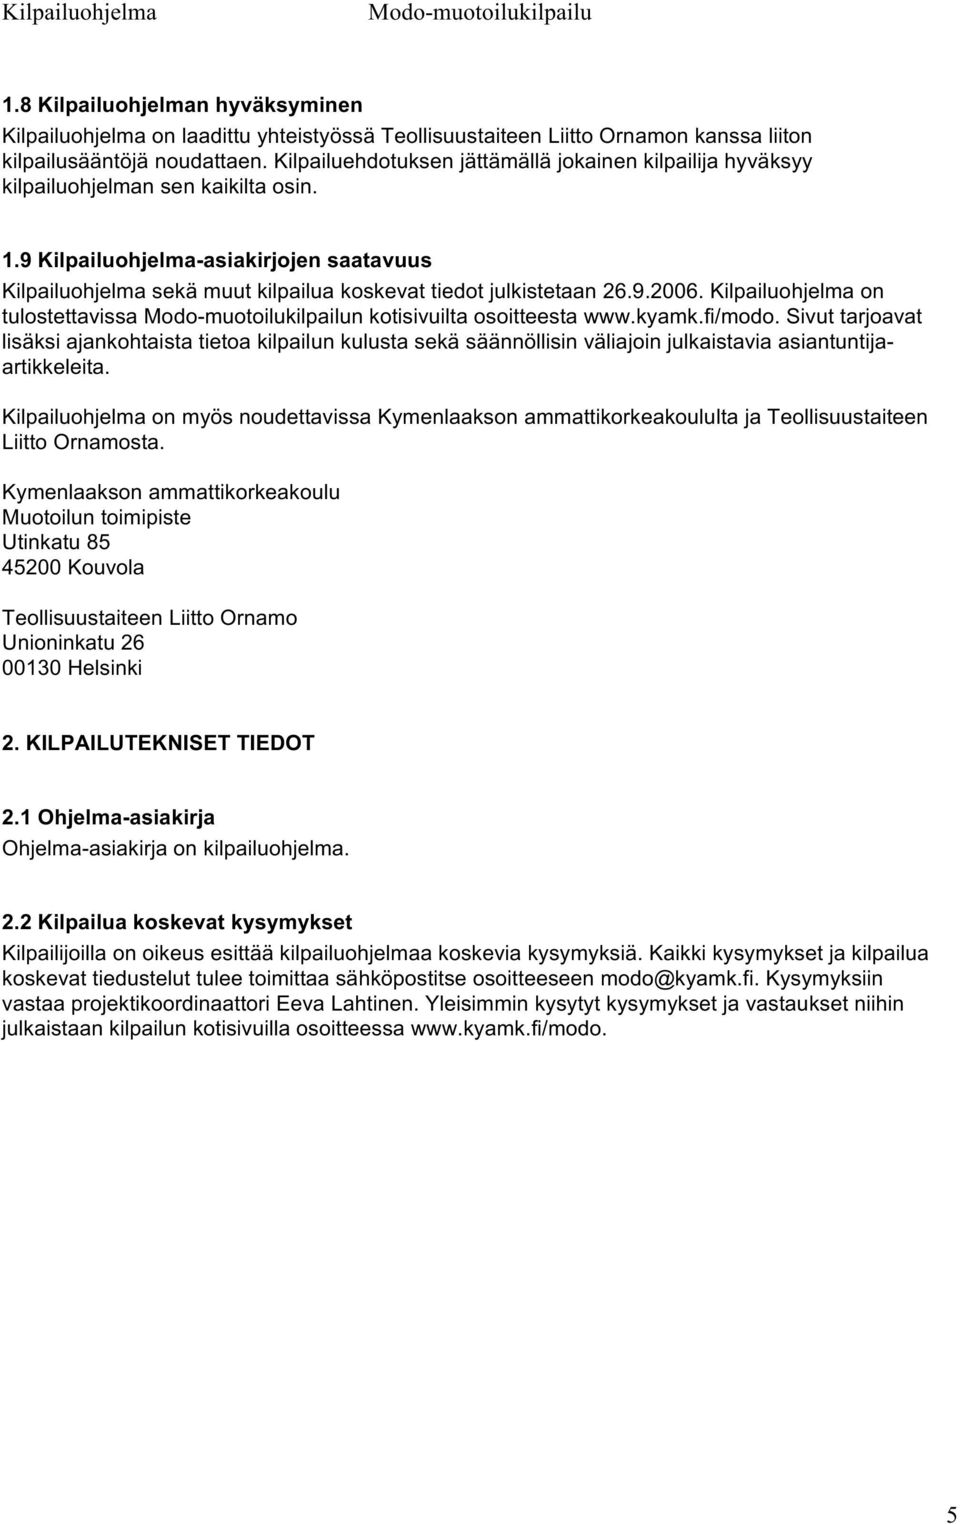 9 Kilpailuohjelma-asiakirjojen saatavuus Kilpailuohjelma sekä muut kilpailua koskevat tiedot julkistetaan 26.9.2006. Kilpailuohjelma on tulostettavissa n kotisivuilta osoitteesta www.kyamk.fi/modo.